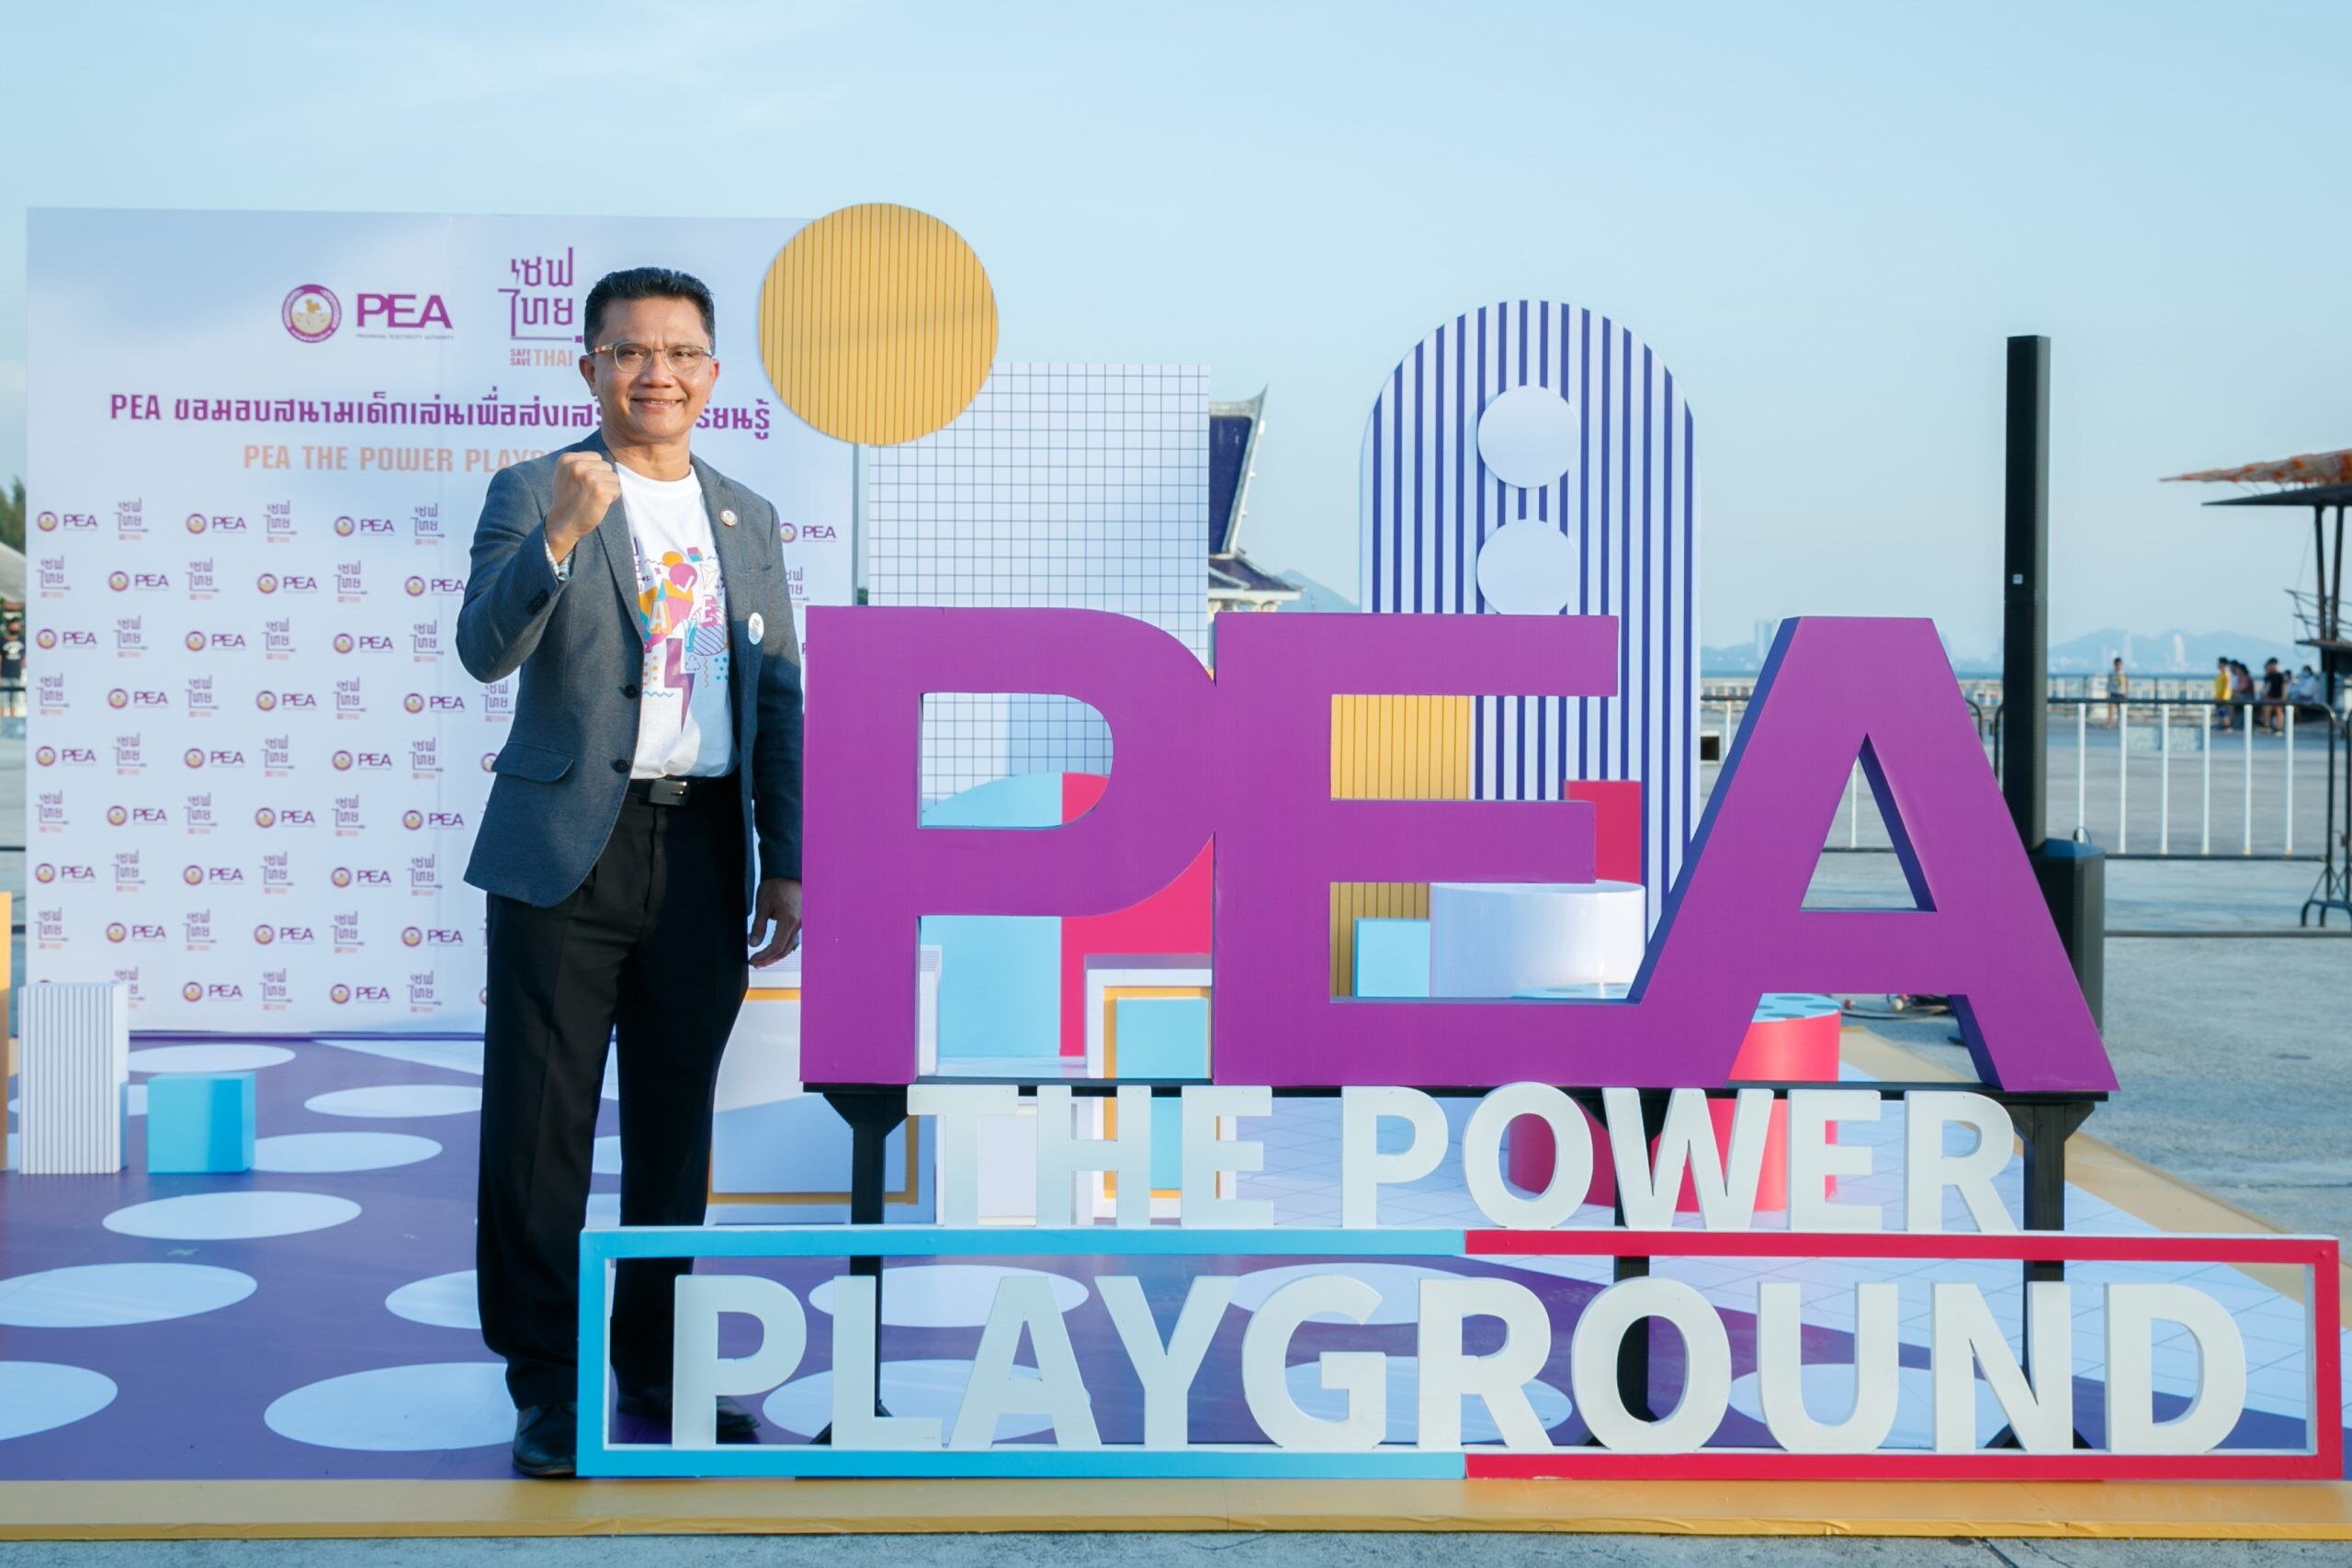 PEA มอบสนามเด็กเล่น "PEA THE POWER PLAYGROUND" ของโครงการ "เซฟไทย" ให้เทศบาลเมืองแสนสุข จ.ชลบุรี พร้อมเชิญชวนเยาวชนร่วมเรียนรู้ด้านไฟฟ้าผ่านการเล่นณ สวนสาธารณะ